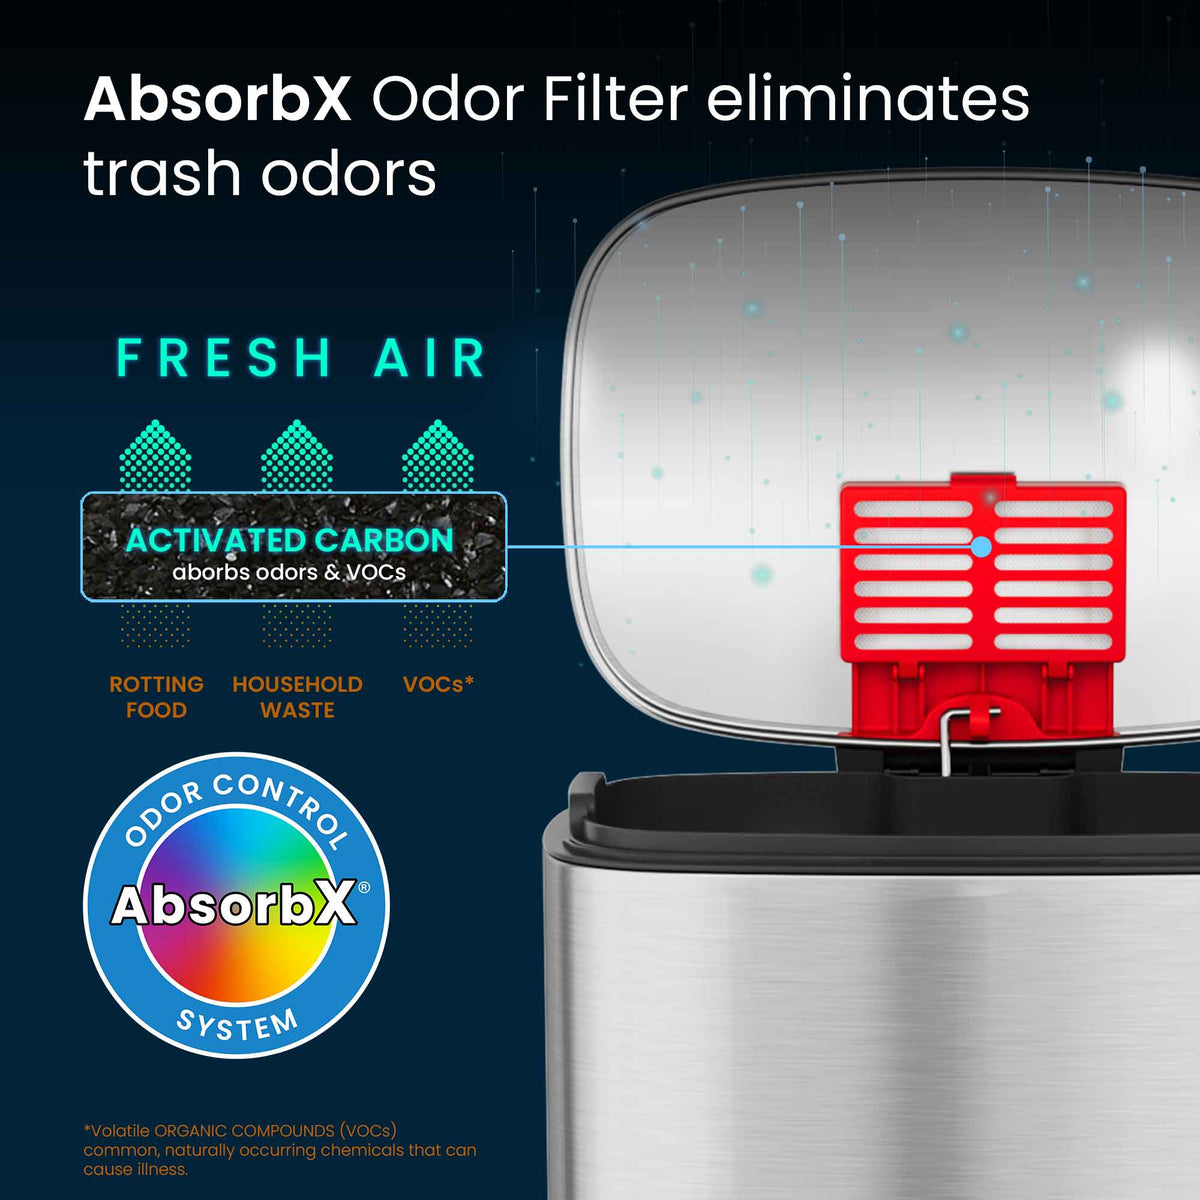 8 Gallon / 30 Liter SoftStep Step Pedal Trash Can AbsorbX Odor Filter eliminates trash odors